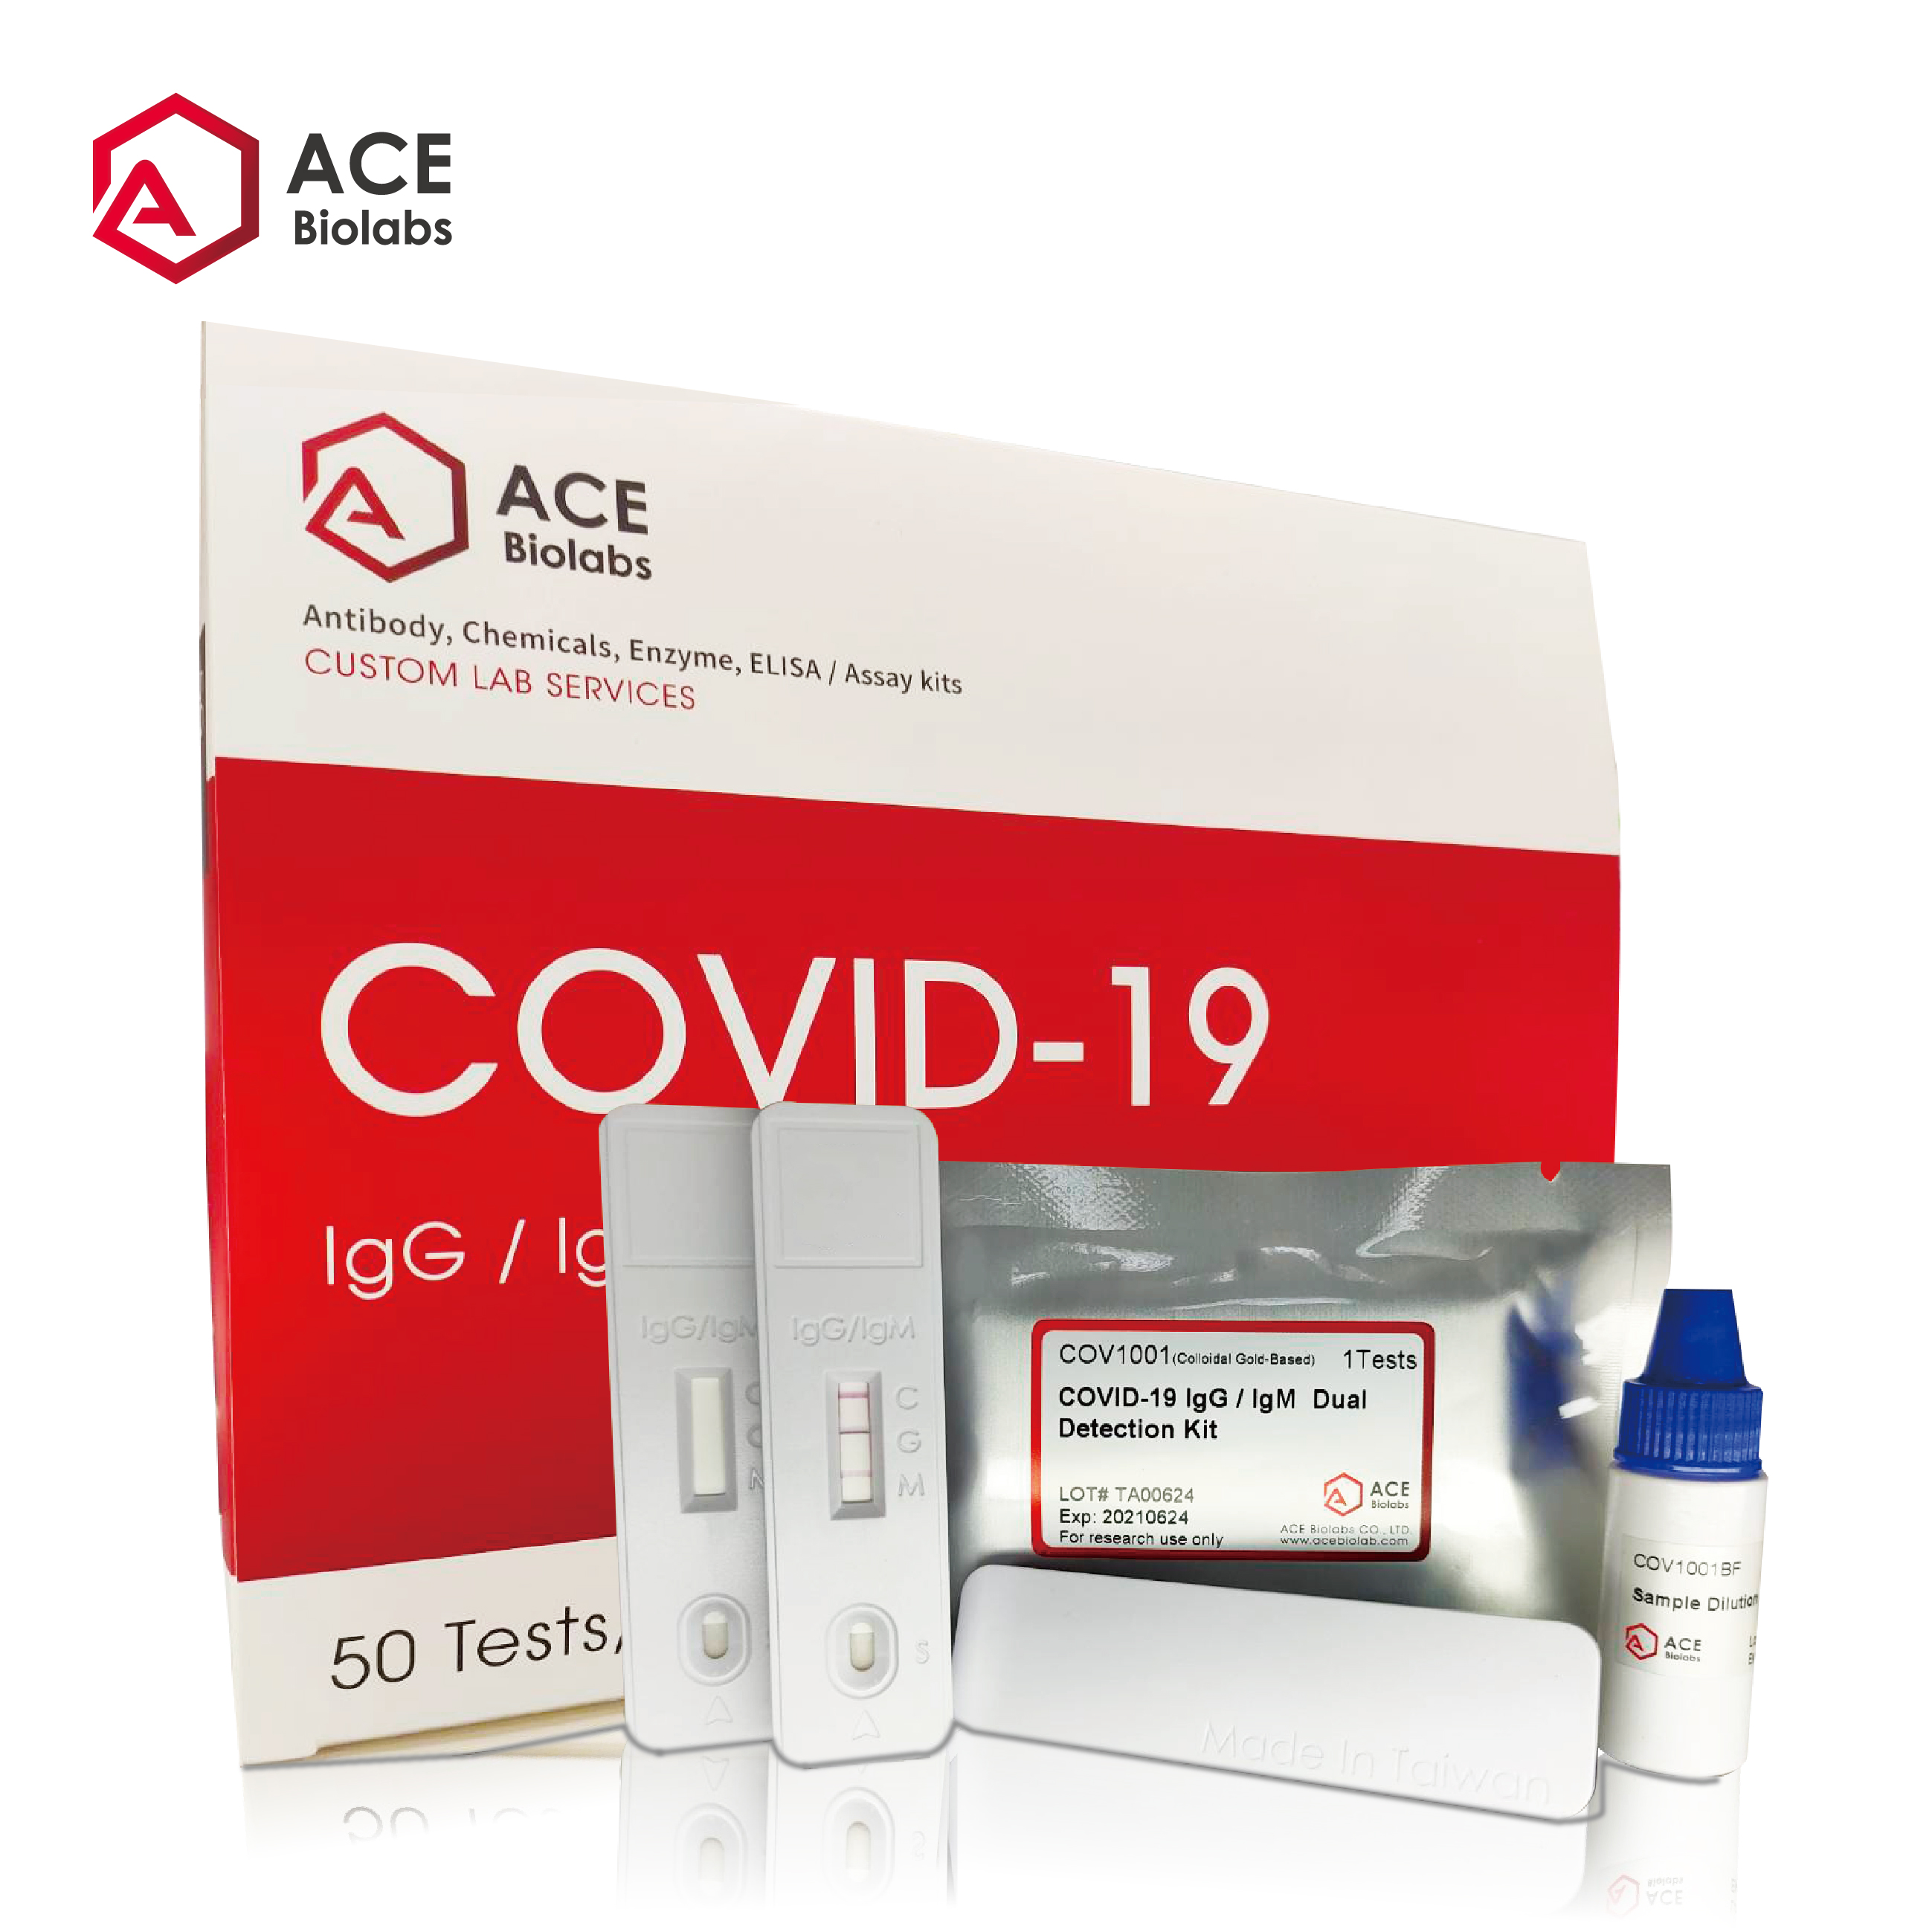 ALLIANCE BIO EXPERTISE et NG BIOTECH s'associent pour la commercialisation  des kits sérologiques de détection du COVID-19 (NG-Test® IgG-IgM COVID-19)  - Alliance Bio Expertise